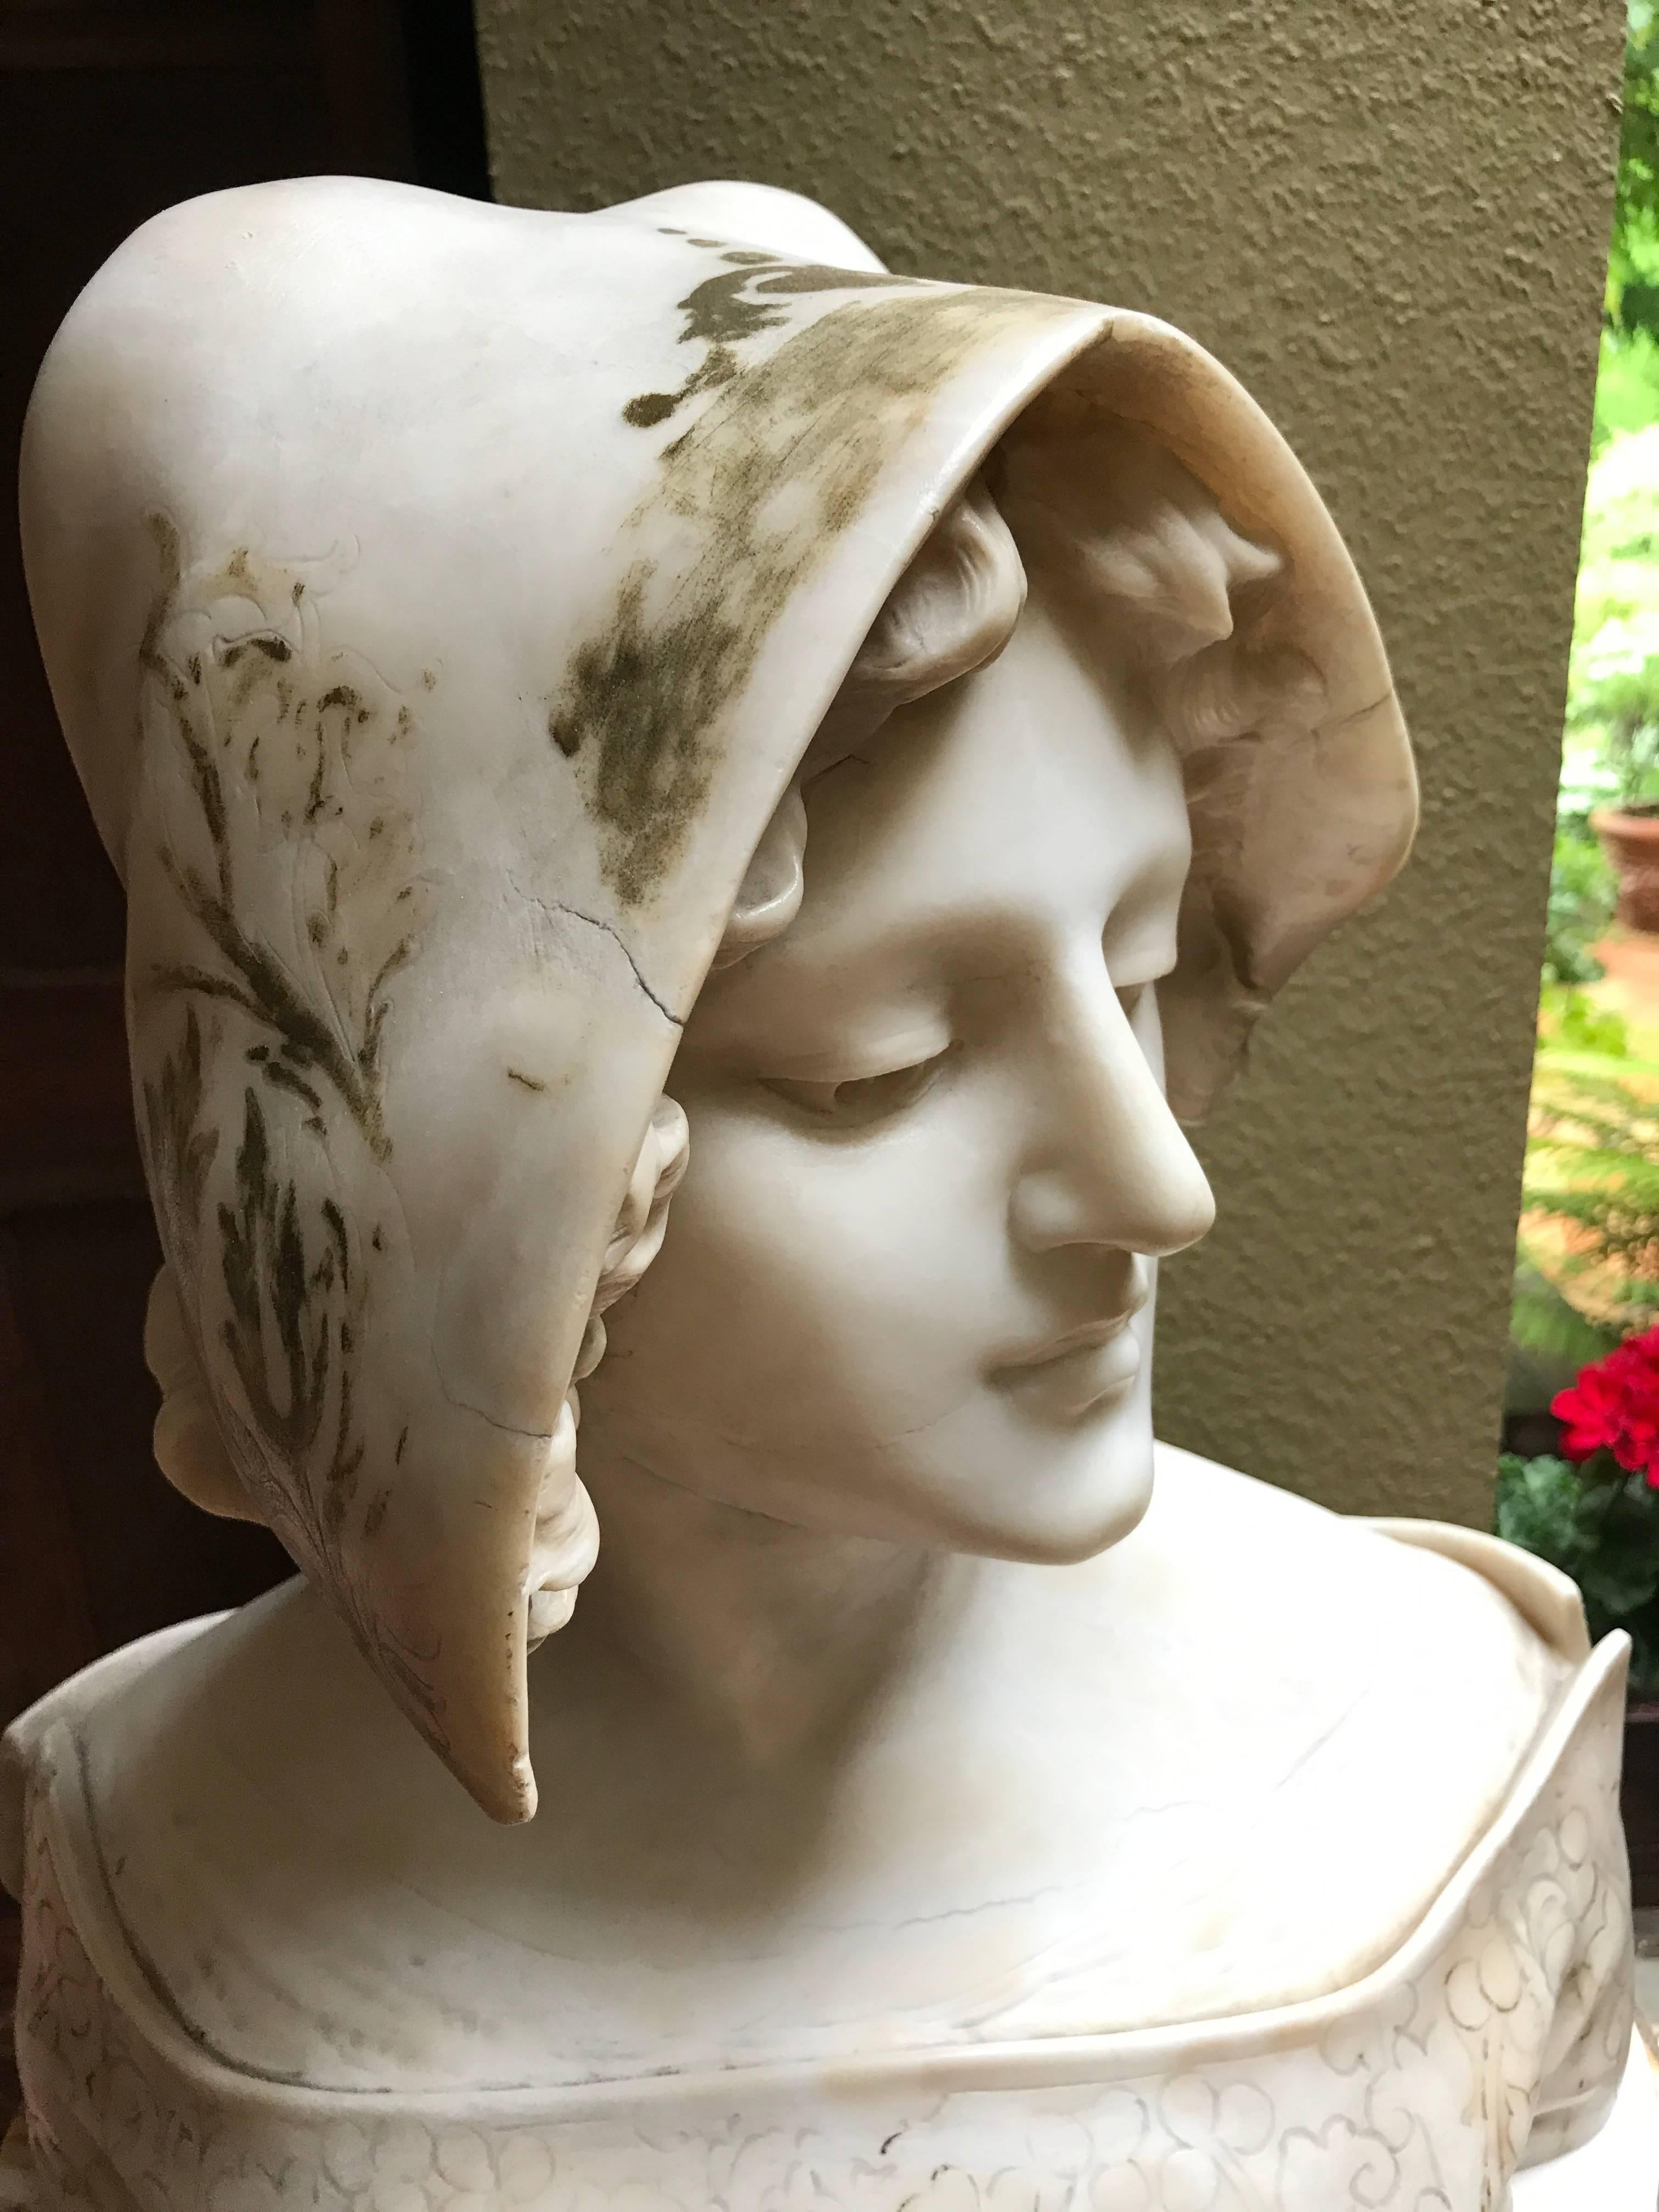 Frauenbüste von Vicari Cristoforo (Italien 1846-1913)

Italienischer Künstler berühmt für seine Frauenbüsten 
Weißer Marmor (Carrara) mit Resten von gemalten Spitzen an Kopf und Schultern
Signiert auf der Rückseite
Zwei Teile: Die Büste und der